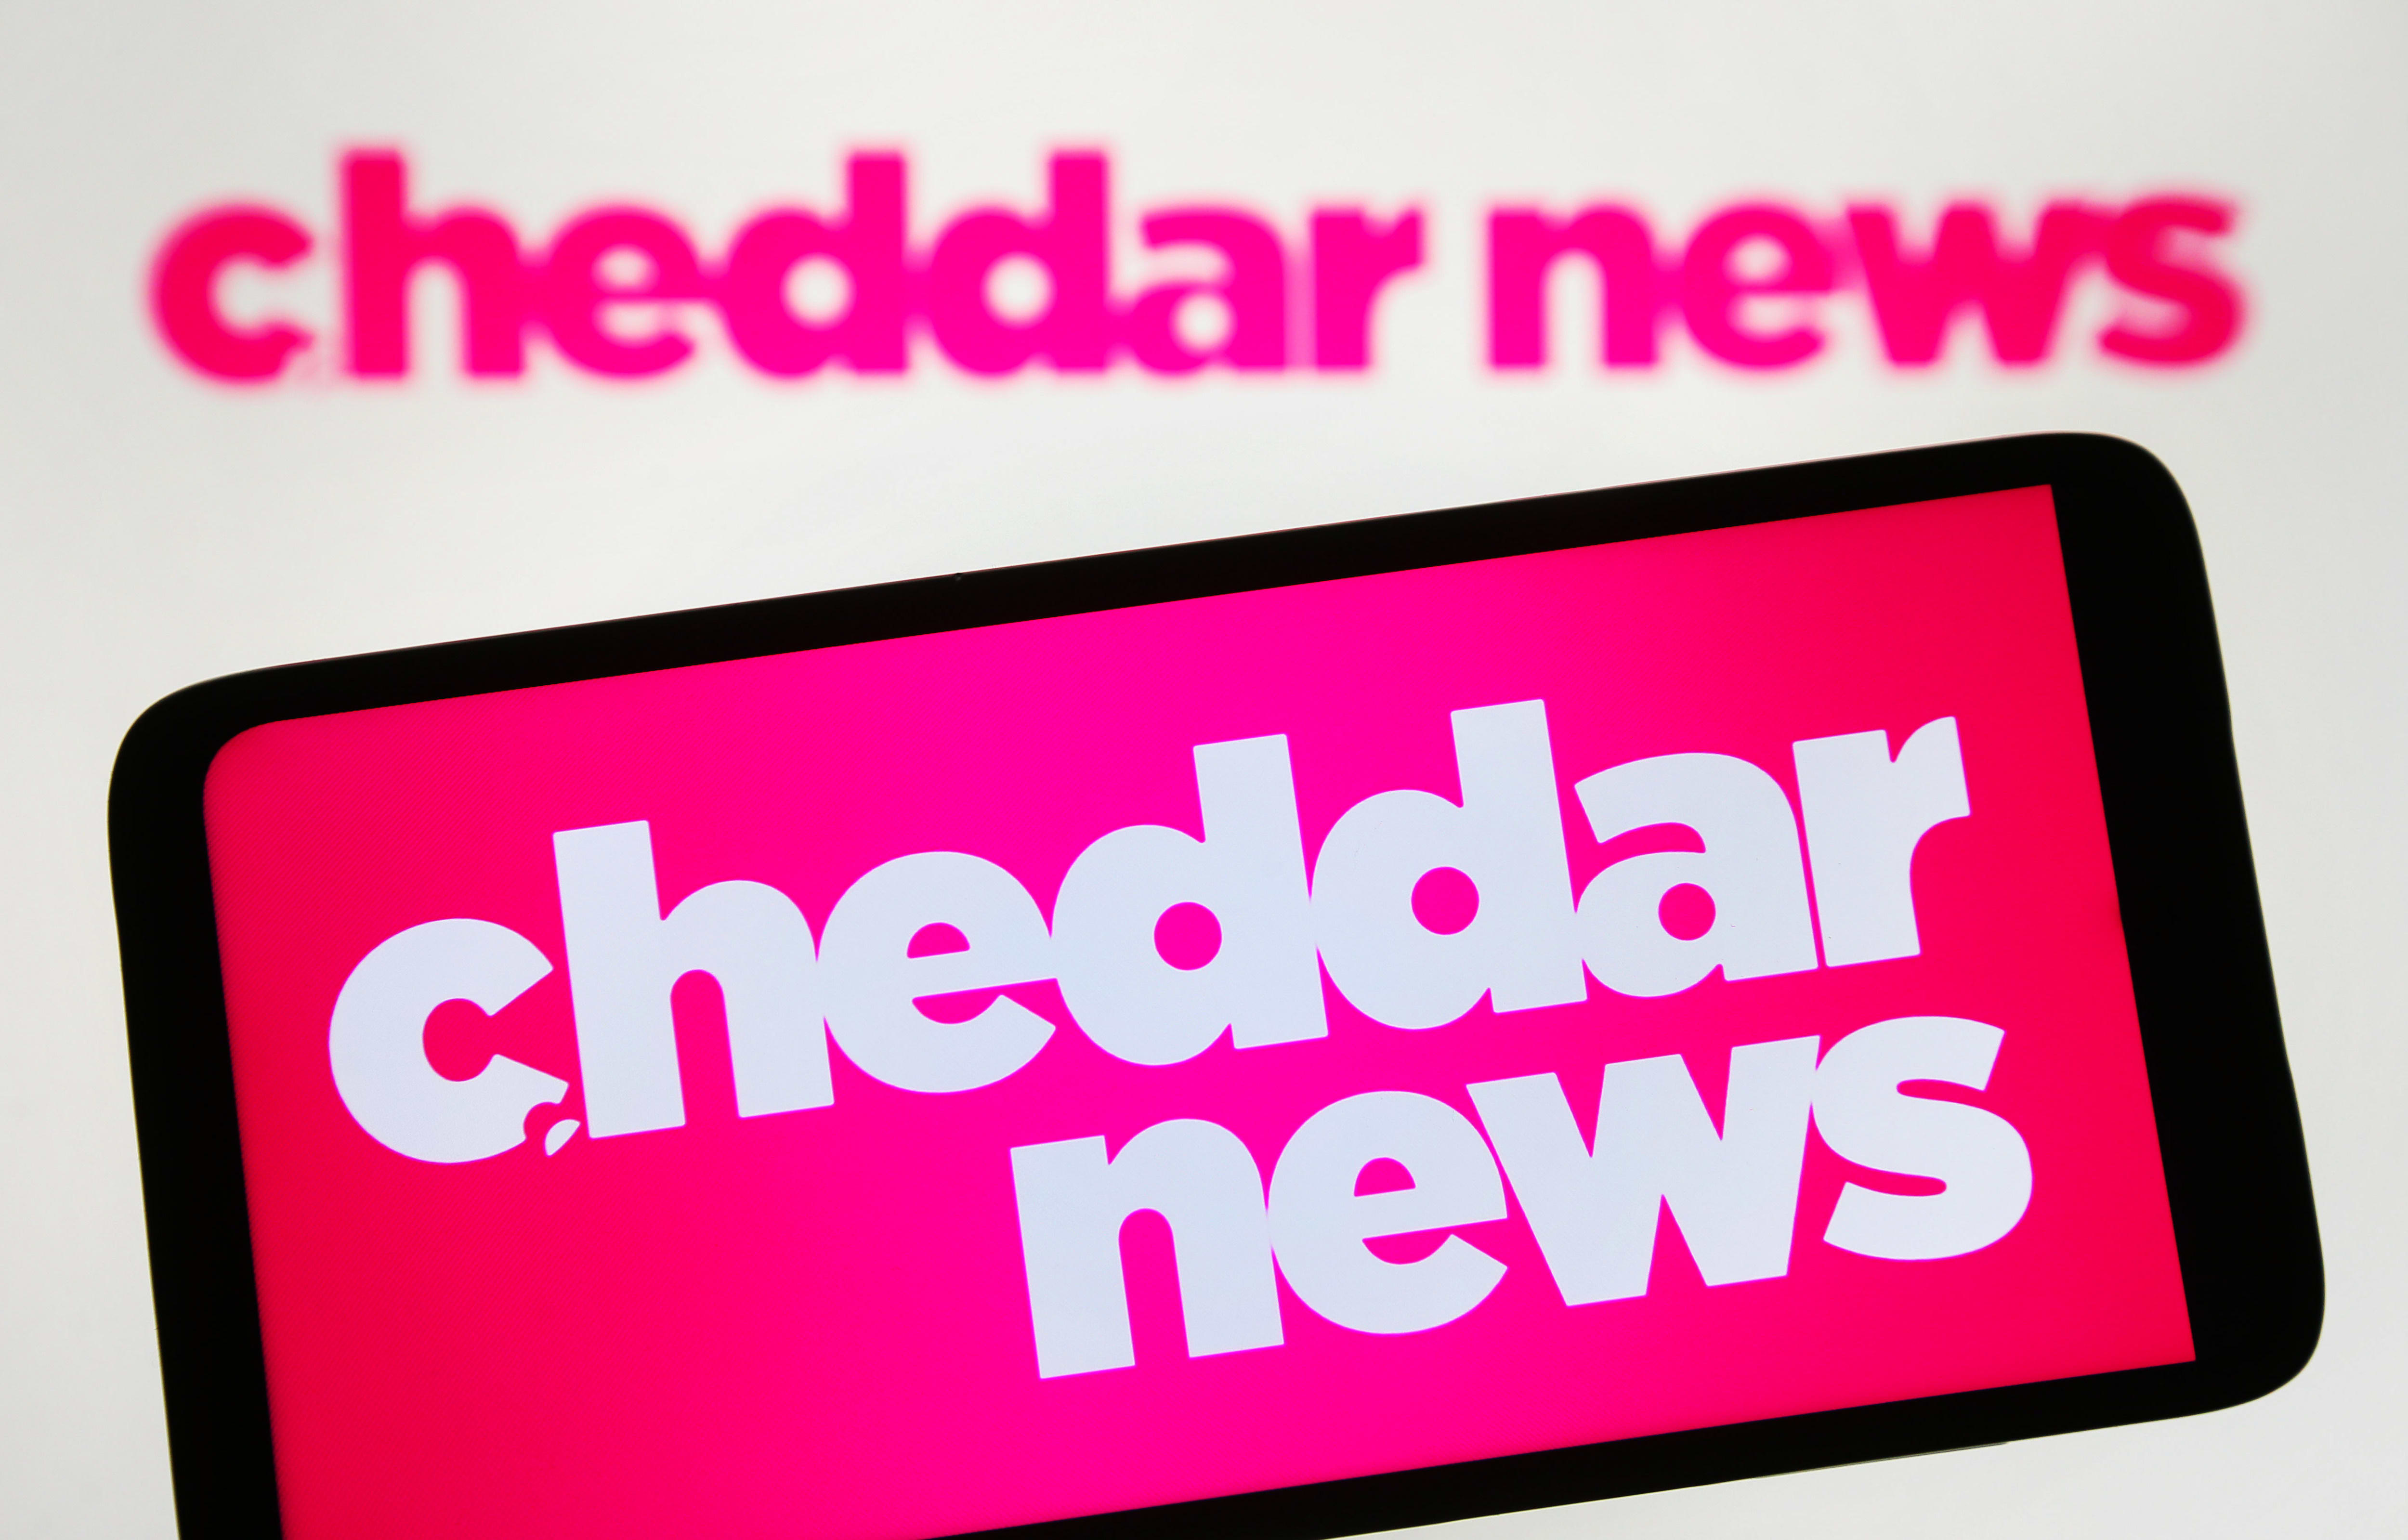 Cheddar News è stata venduta da Altice USA alla società di media Archetype